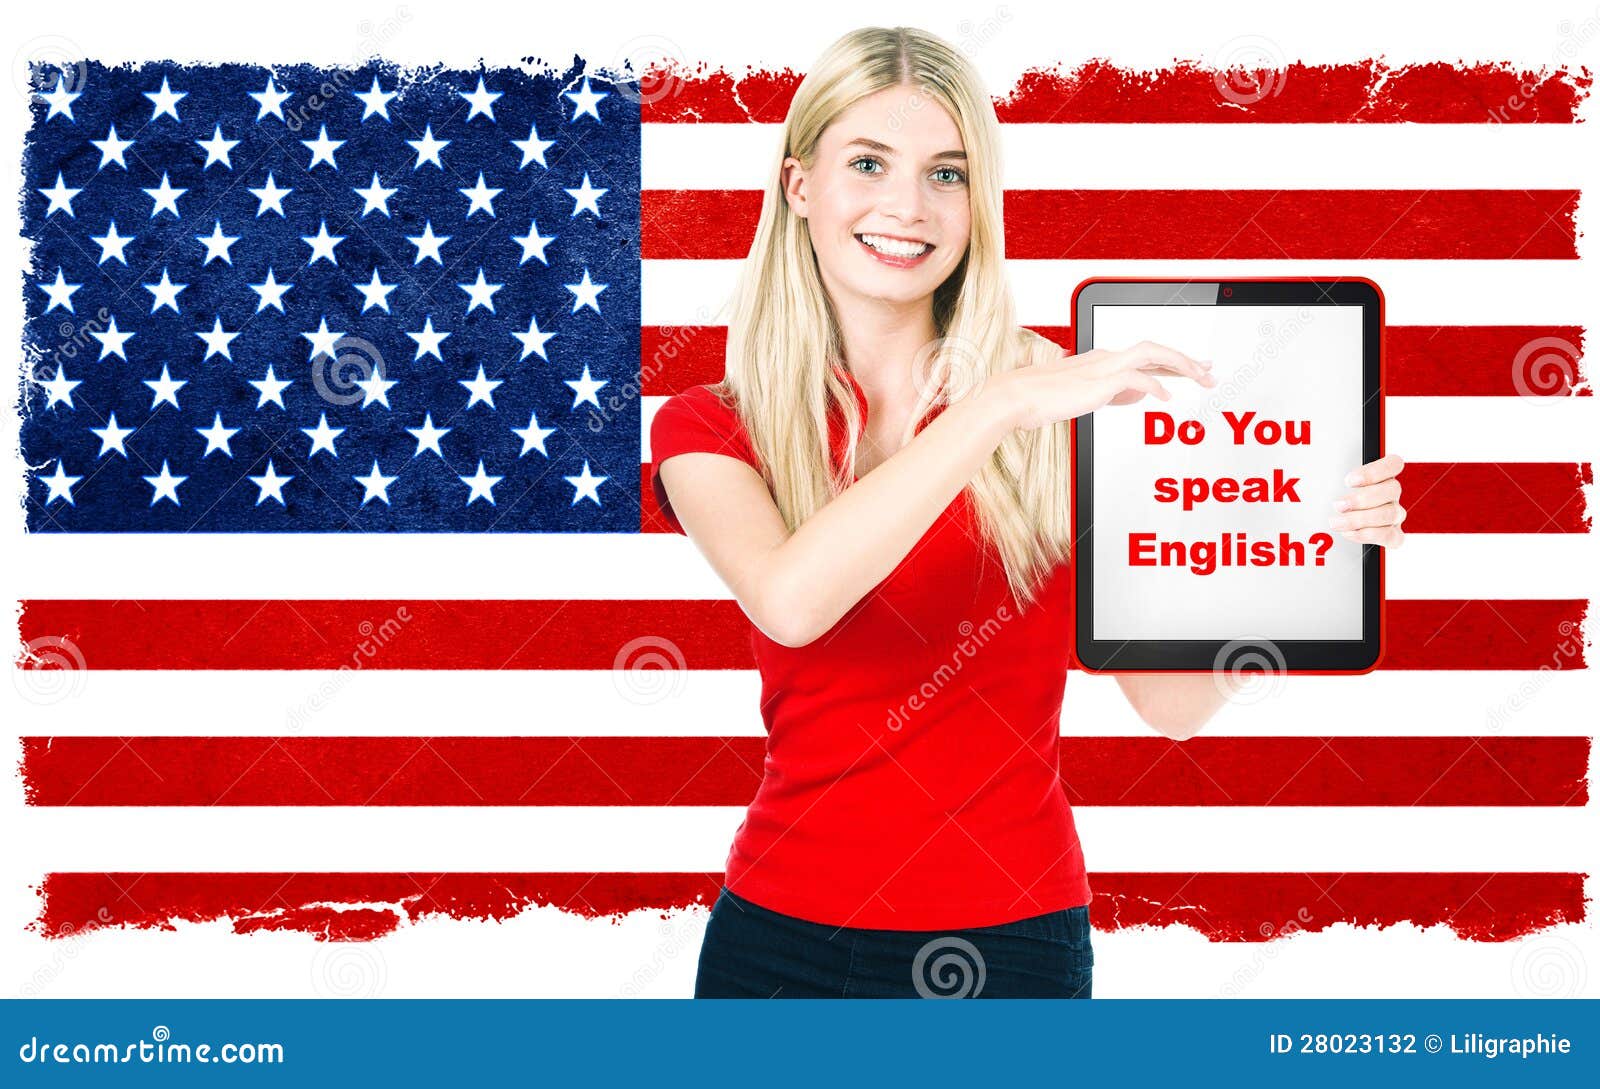 Переведи на английский девушка. Курс разговорный английский школа you speak. Английский язык стоковые фото. Do you speak English девушка с плакатом. Флаг независимости женщин.